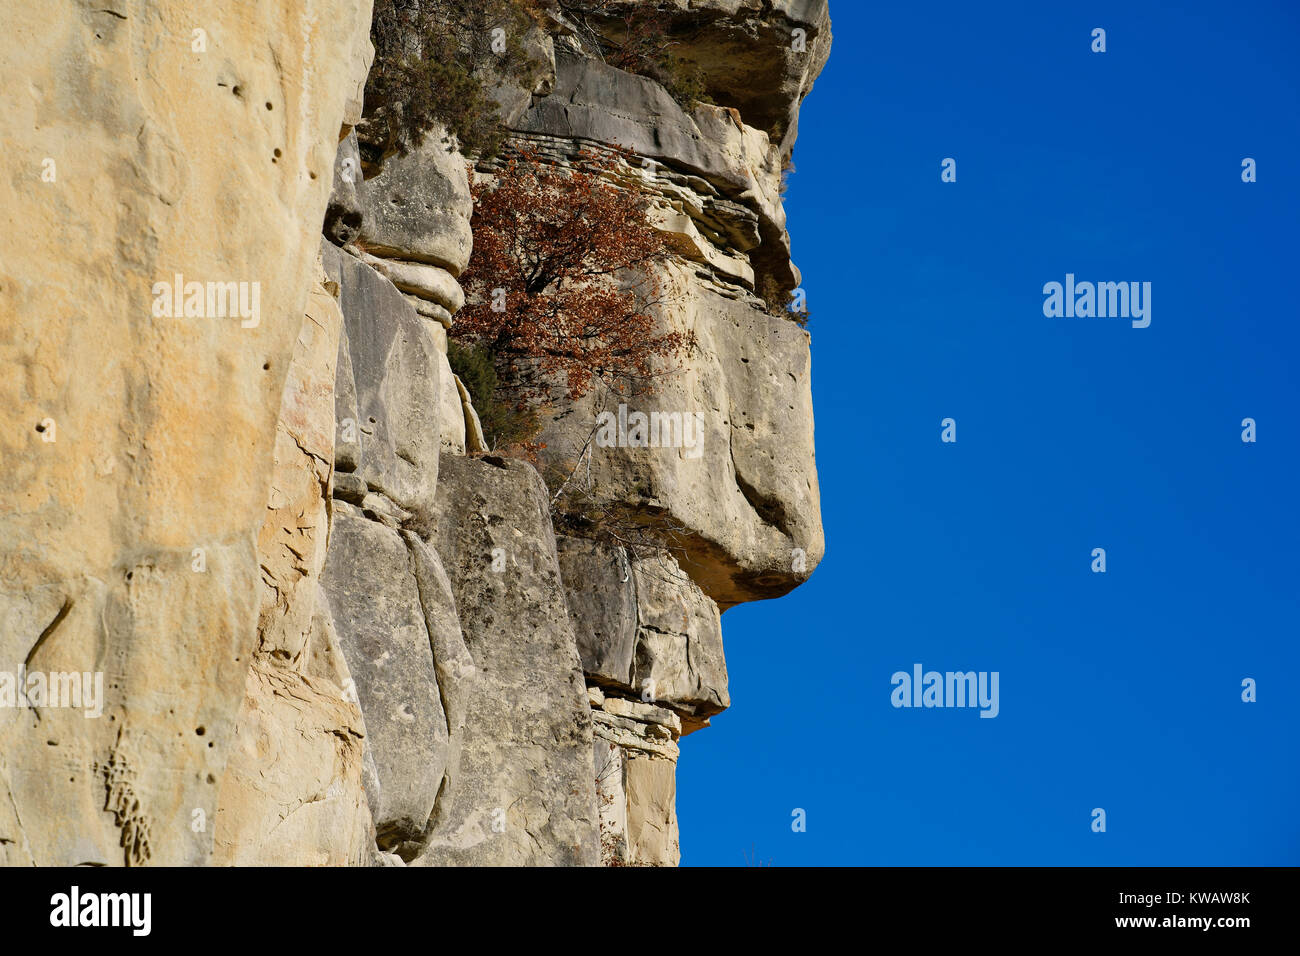 Formation naturelle de roche de grès ressemblant au profil d'un homme. Annot, Alpes de haute-Provence, France. Banque D'Images